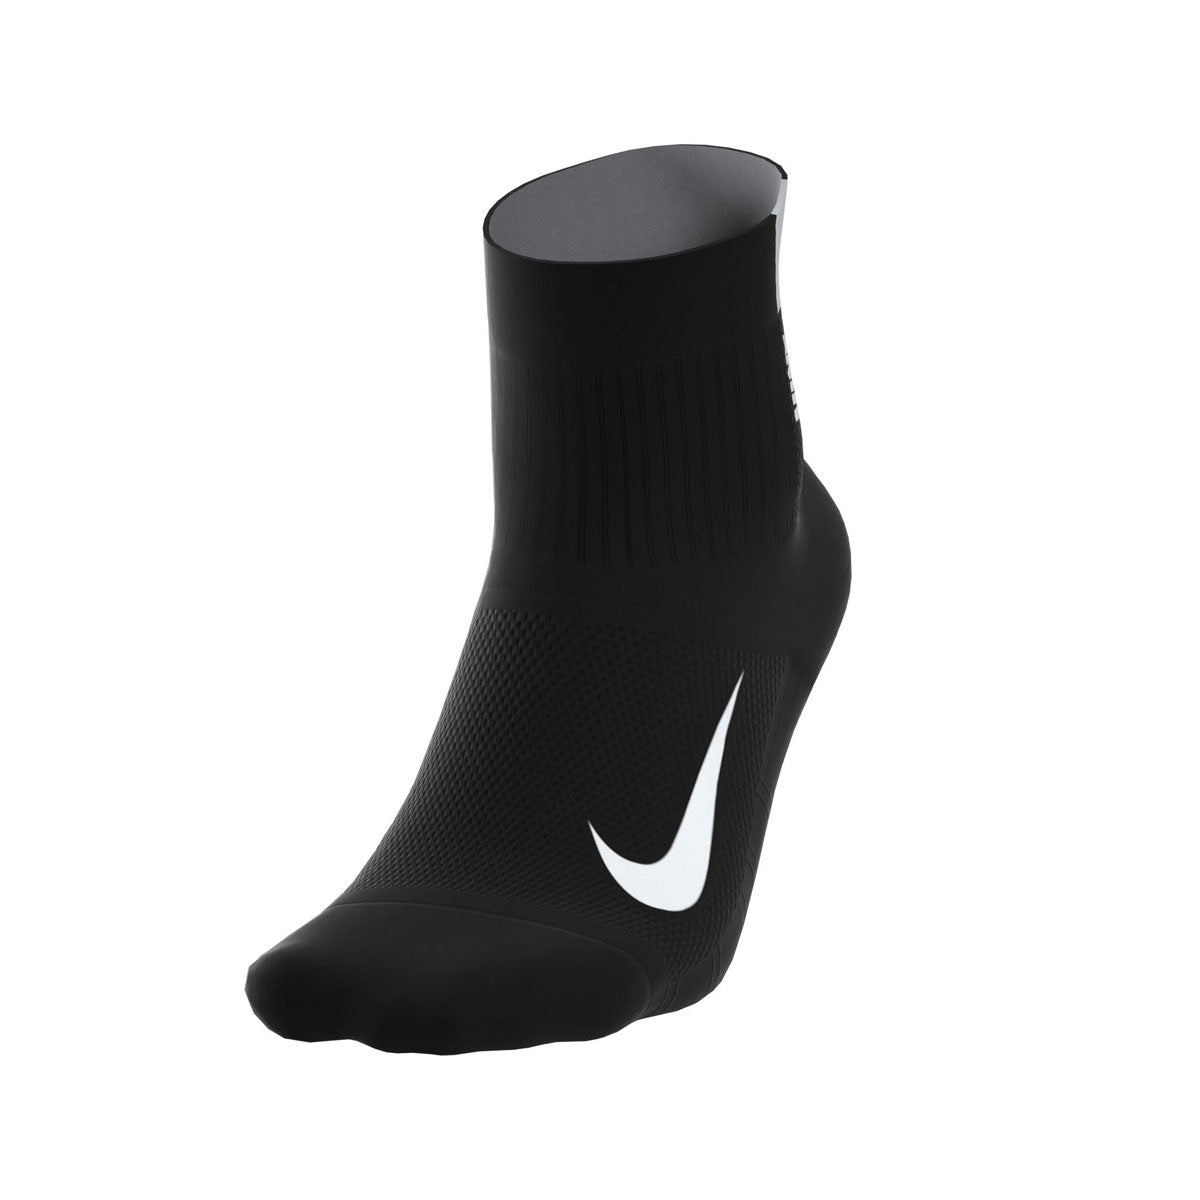 Nike Men's Running Ankle Socks (2 Pair)